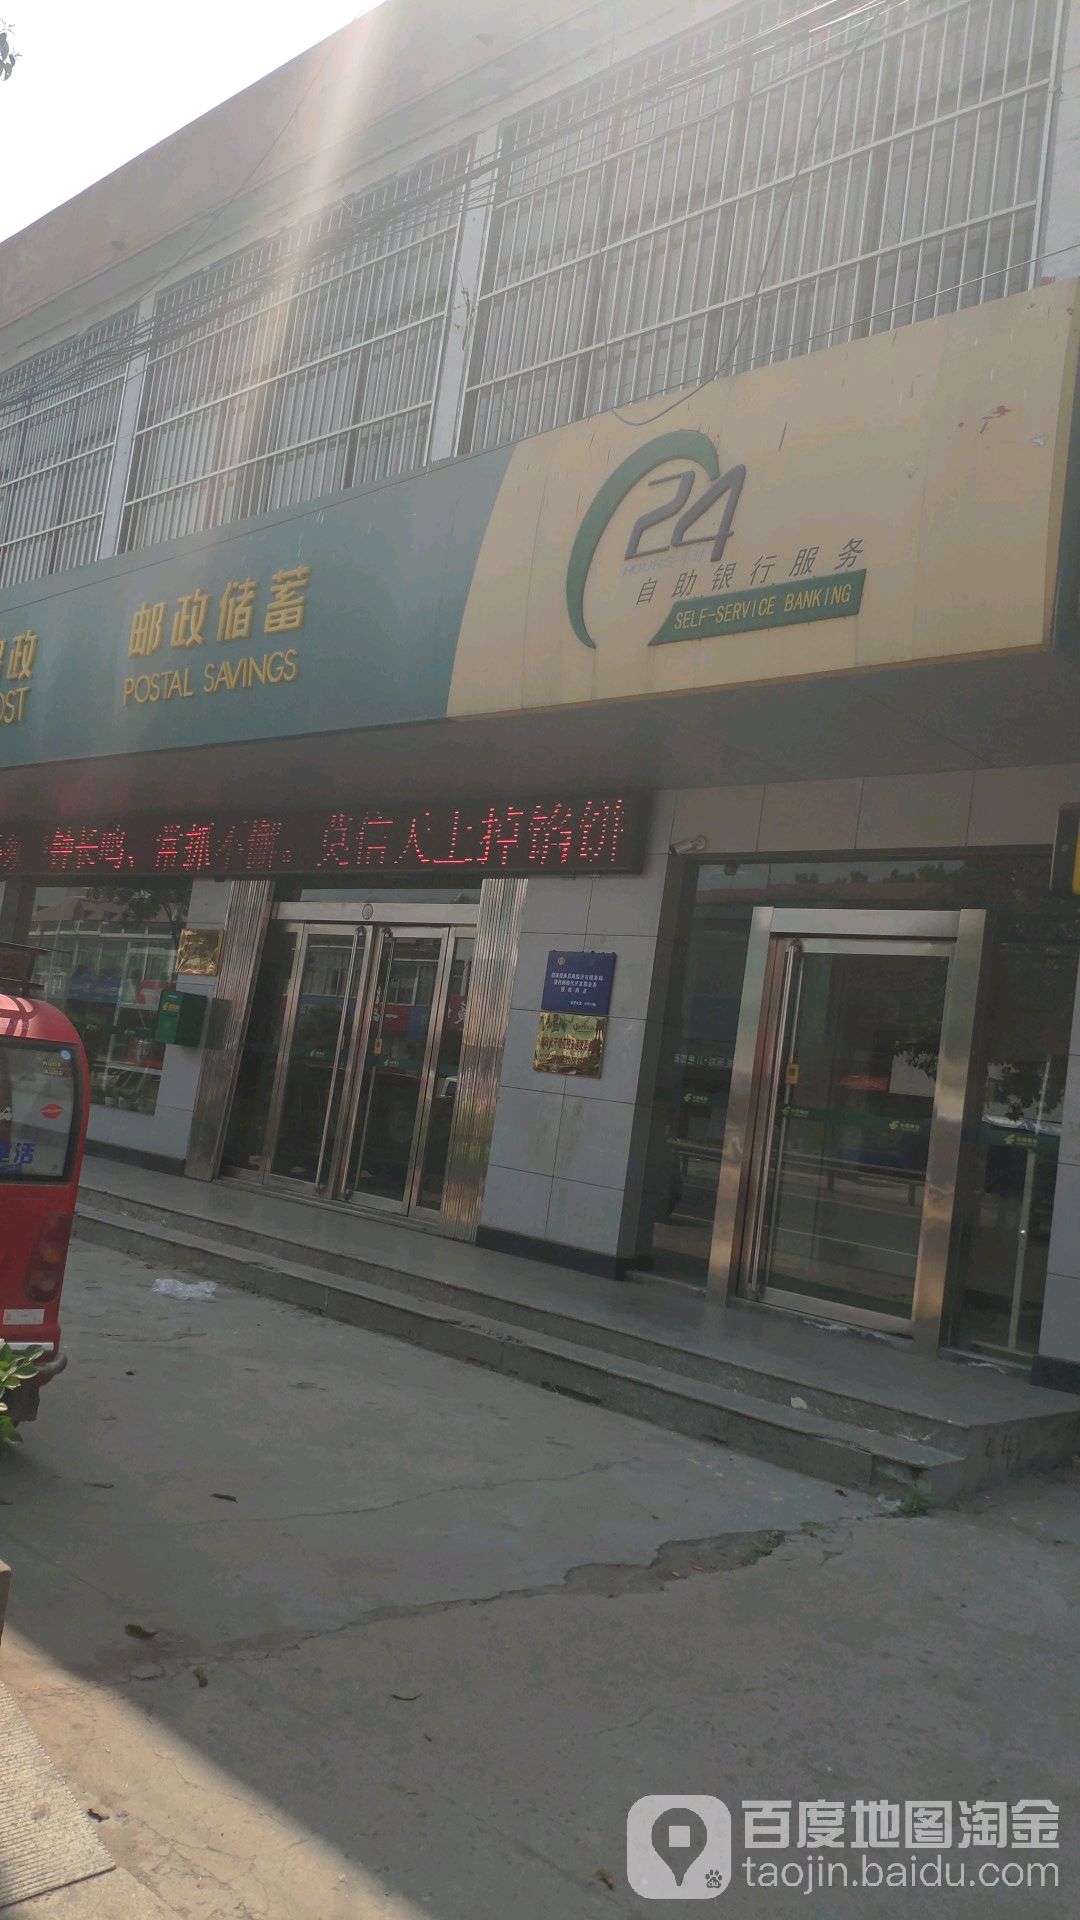 中國郵政儲蓄銀行24小時自助銀行(李莊郵電支局)